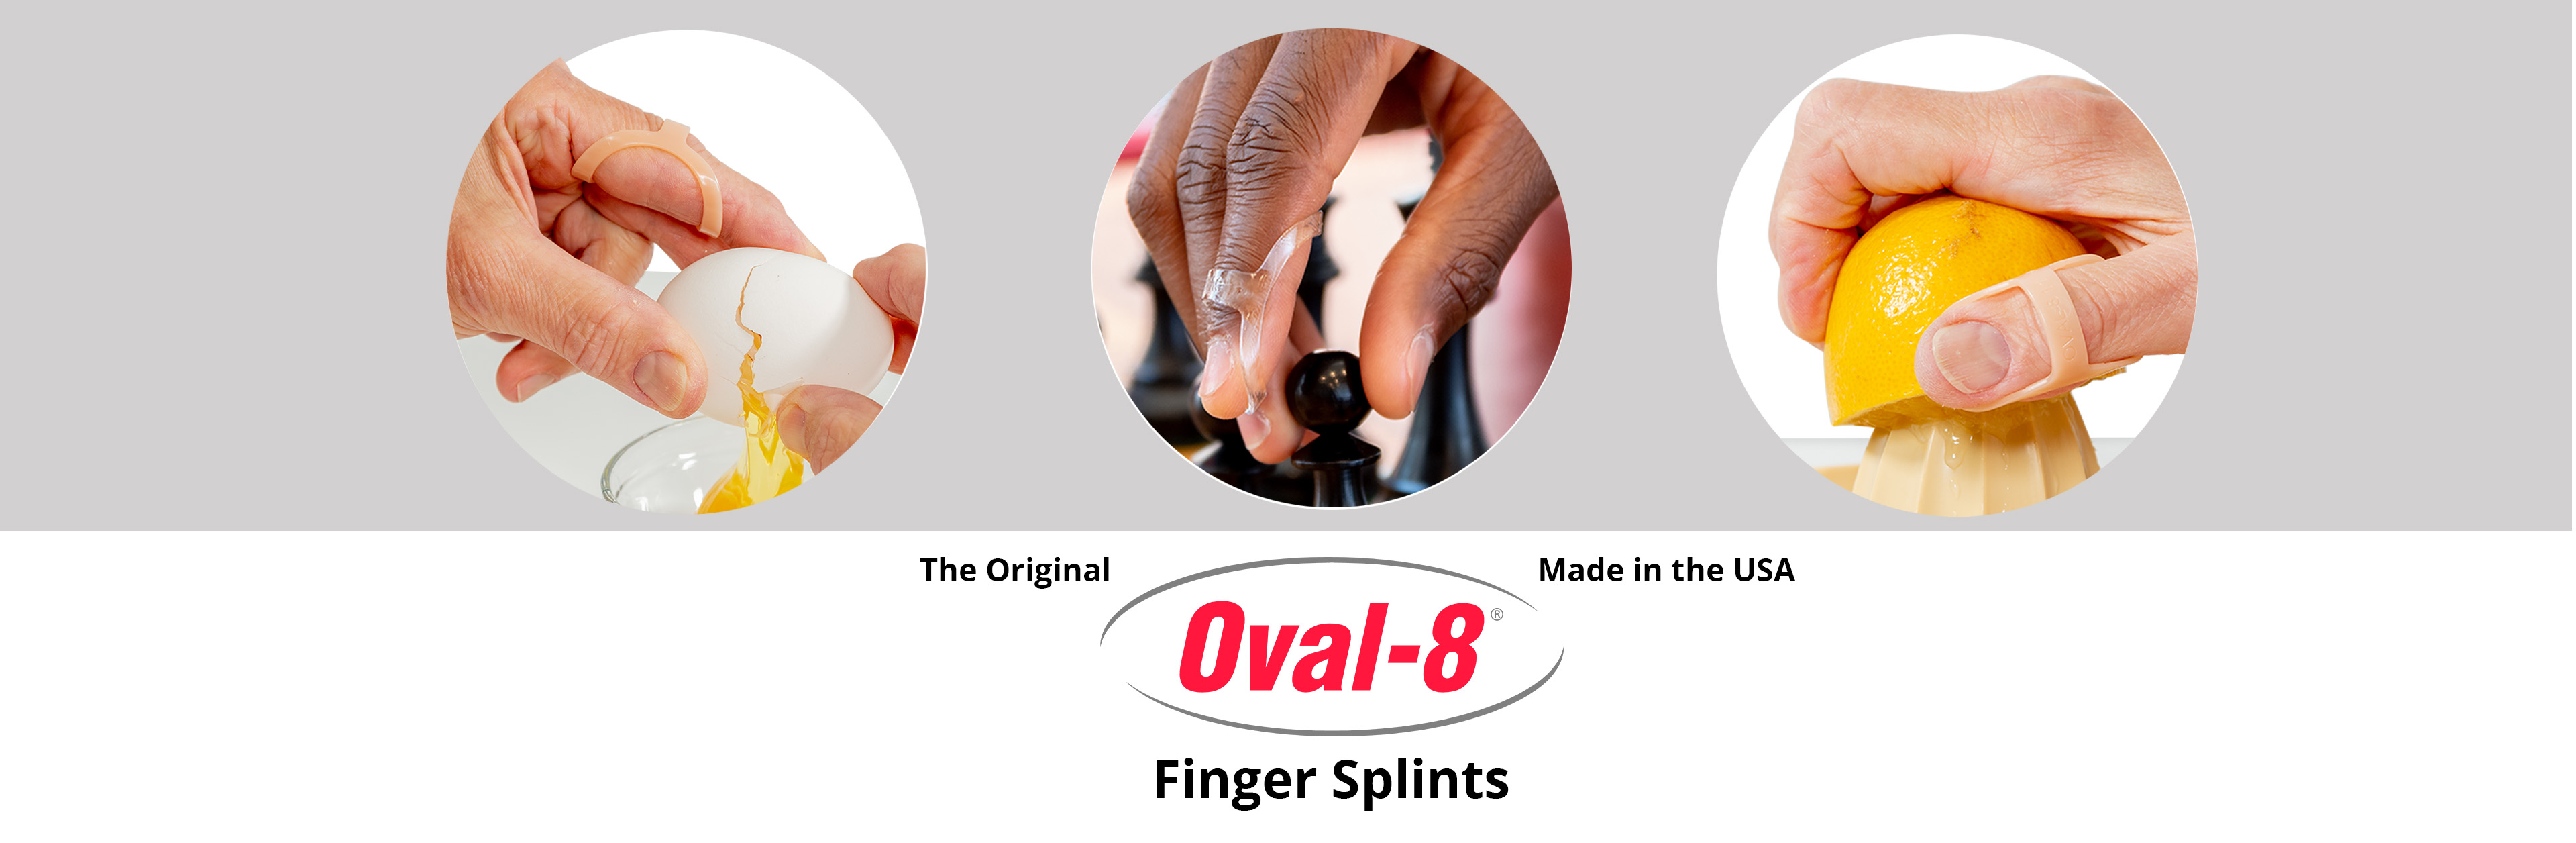 oval-8 finger splints